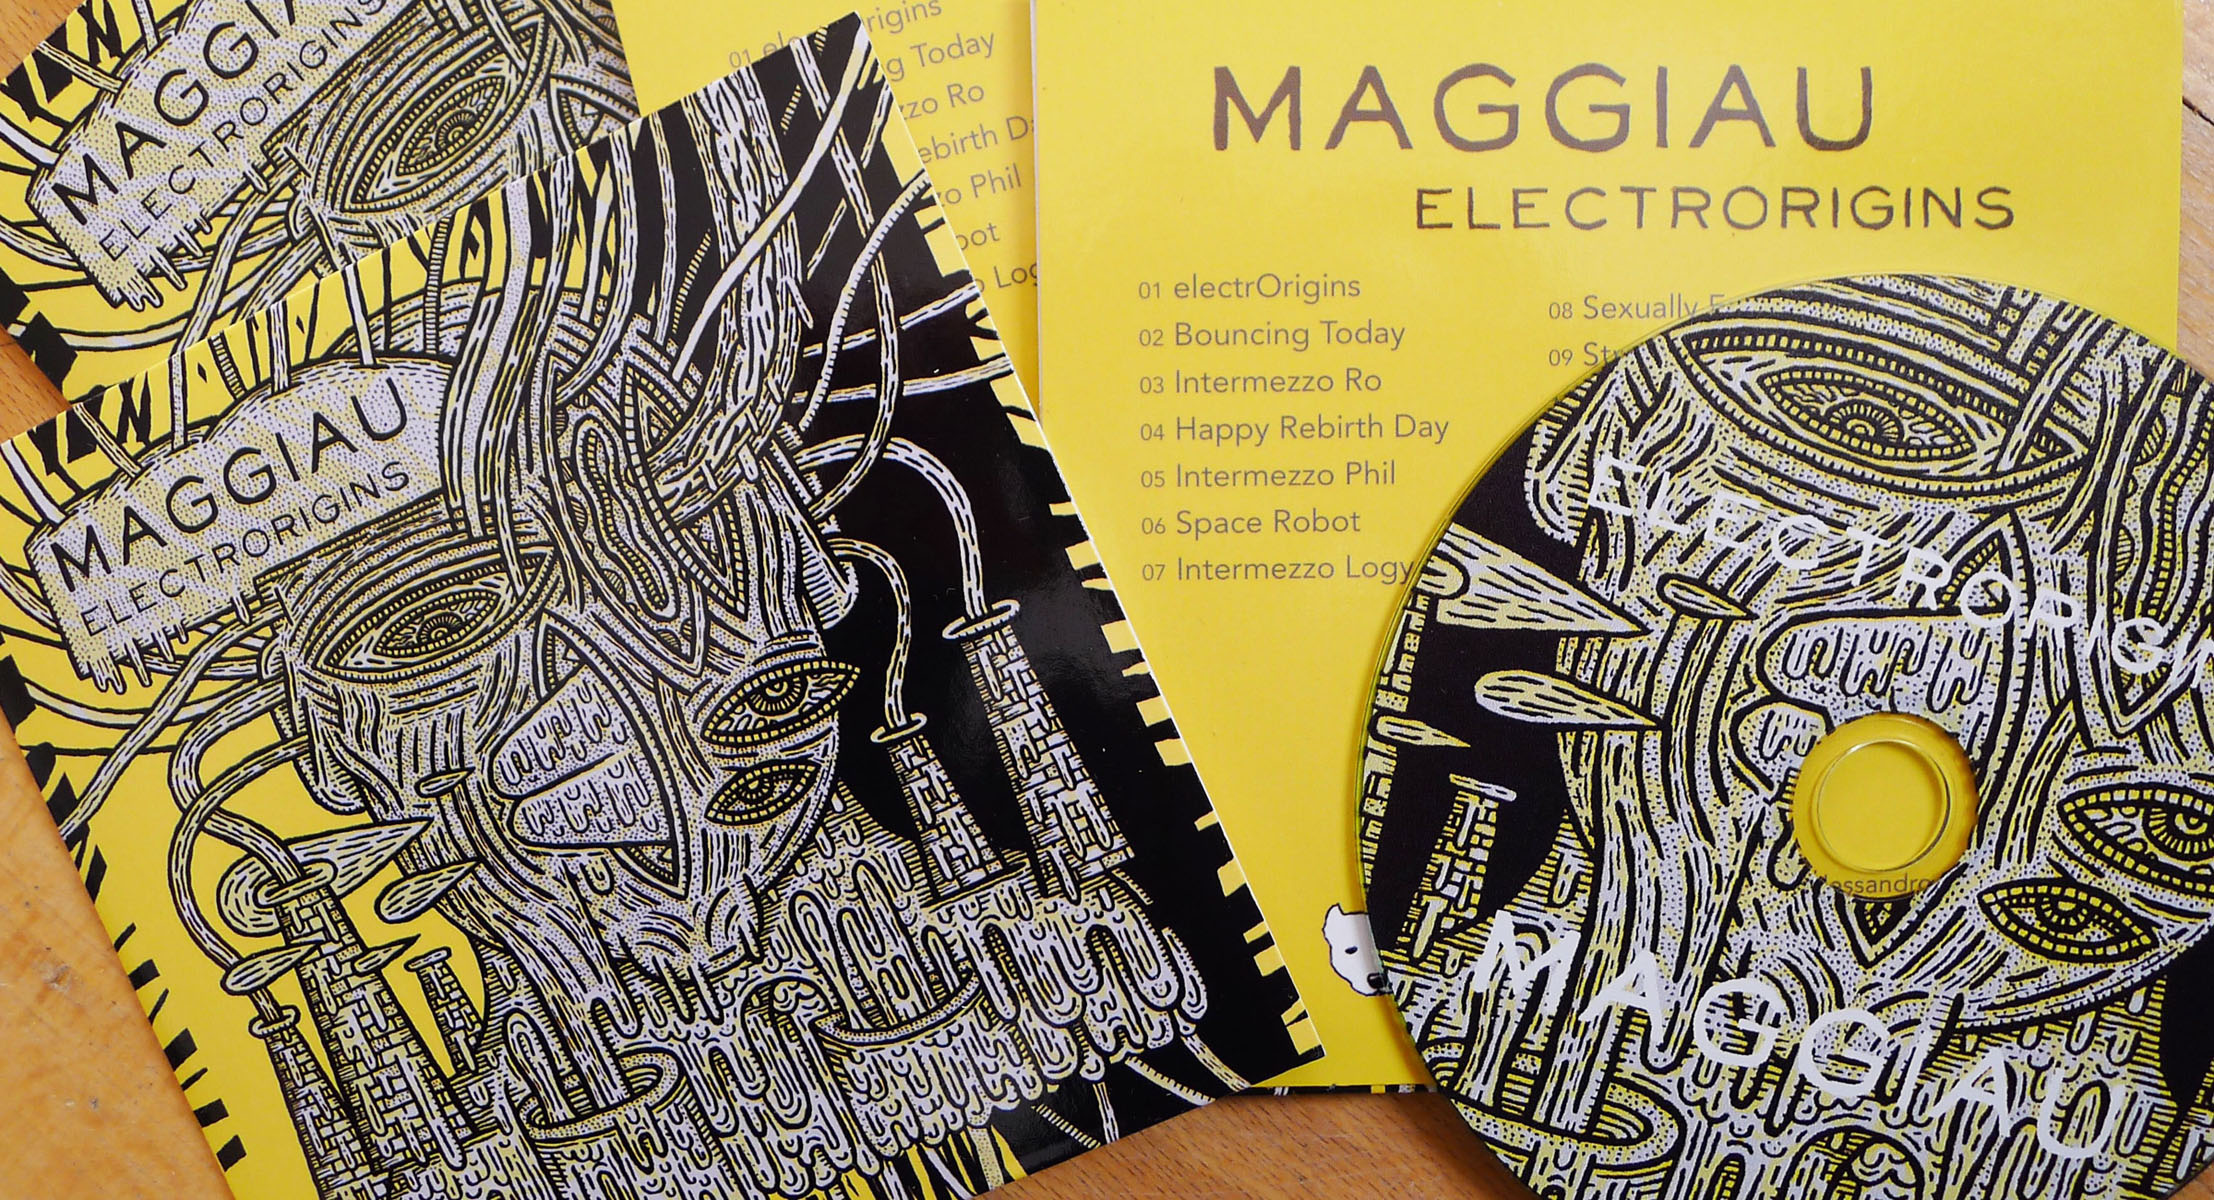 Dessin original pour une pochette de CD du musicien électronique Maggiau.